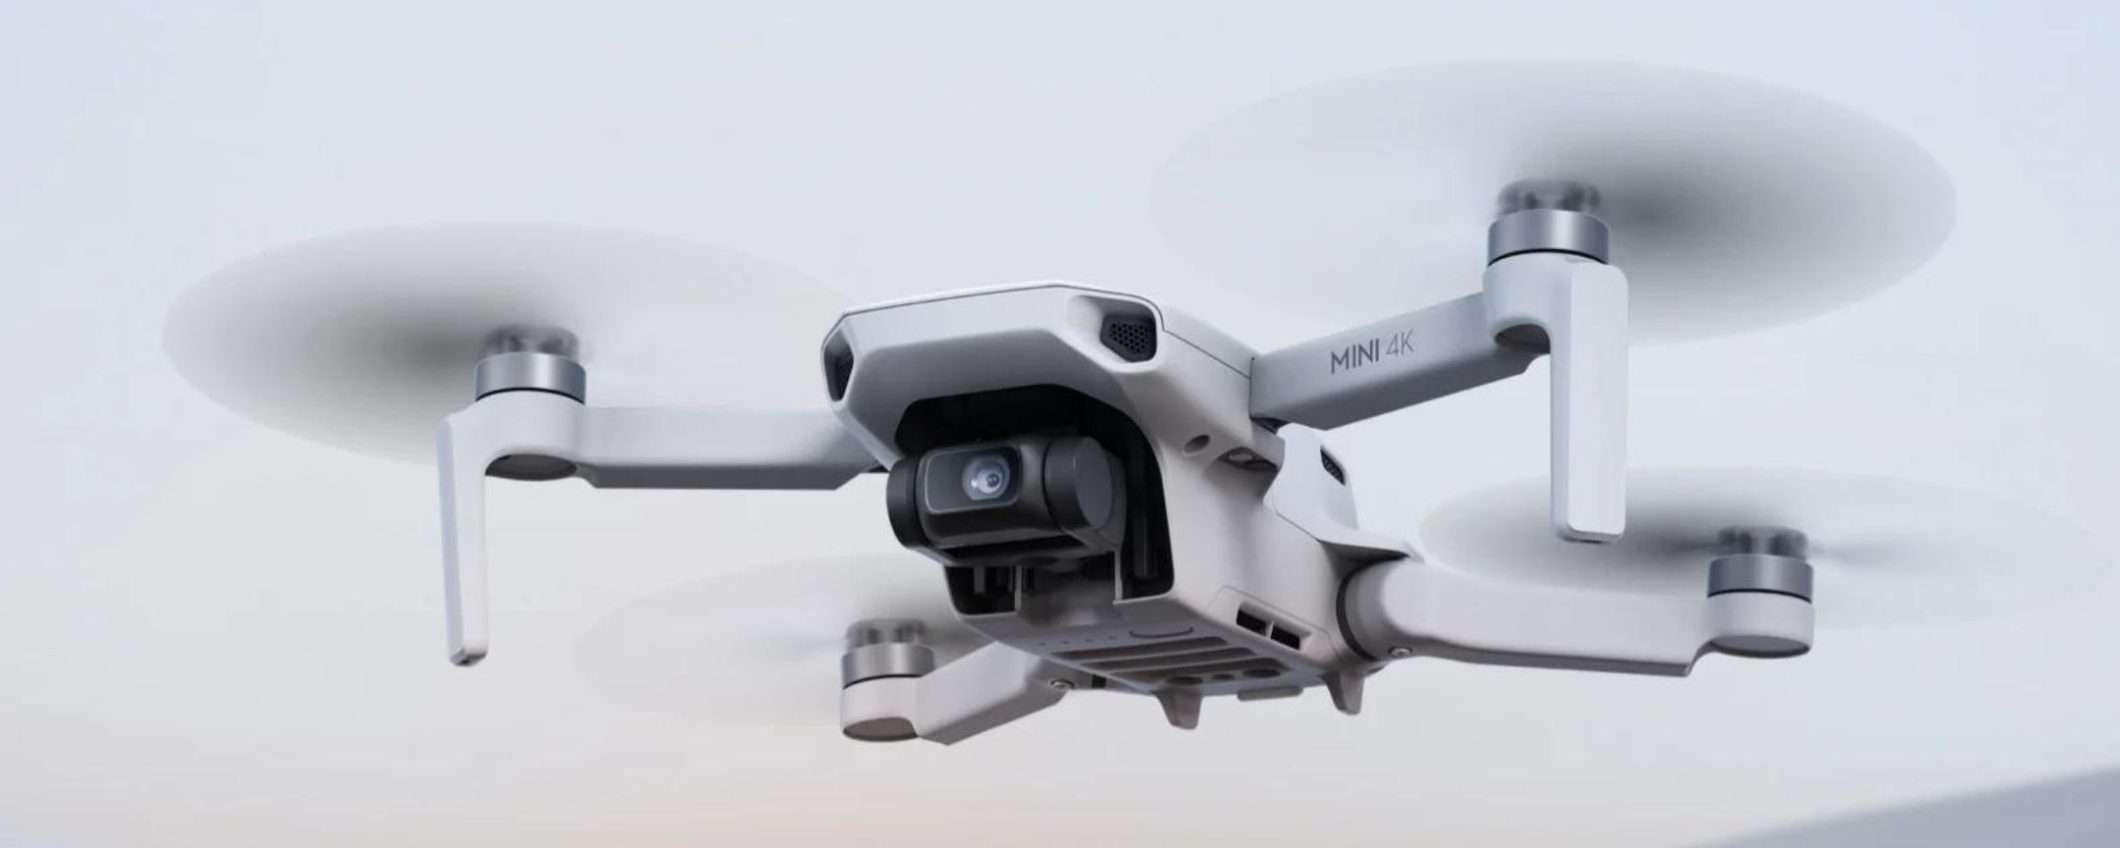 DJI Mini 4K: arriva il nuovo drone consumer per TUTTI